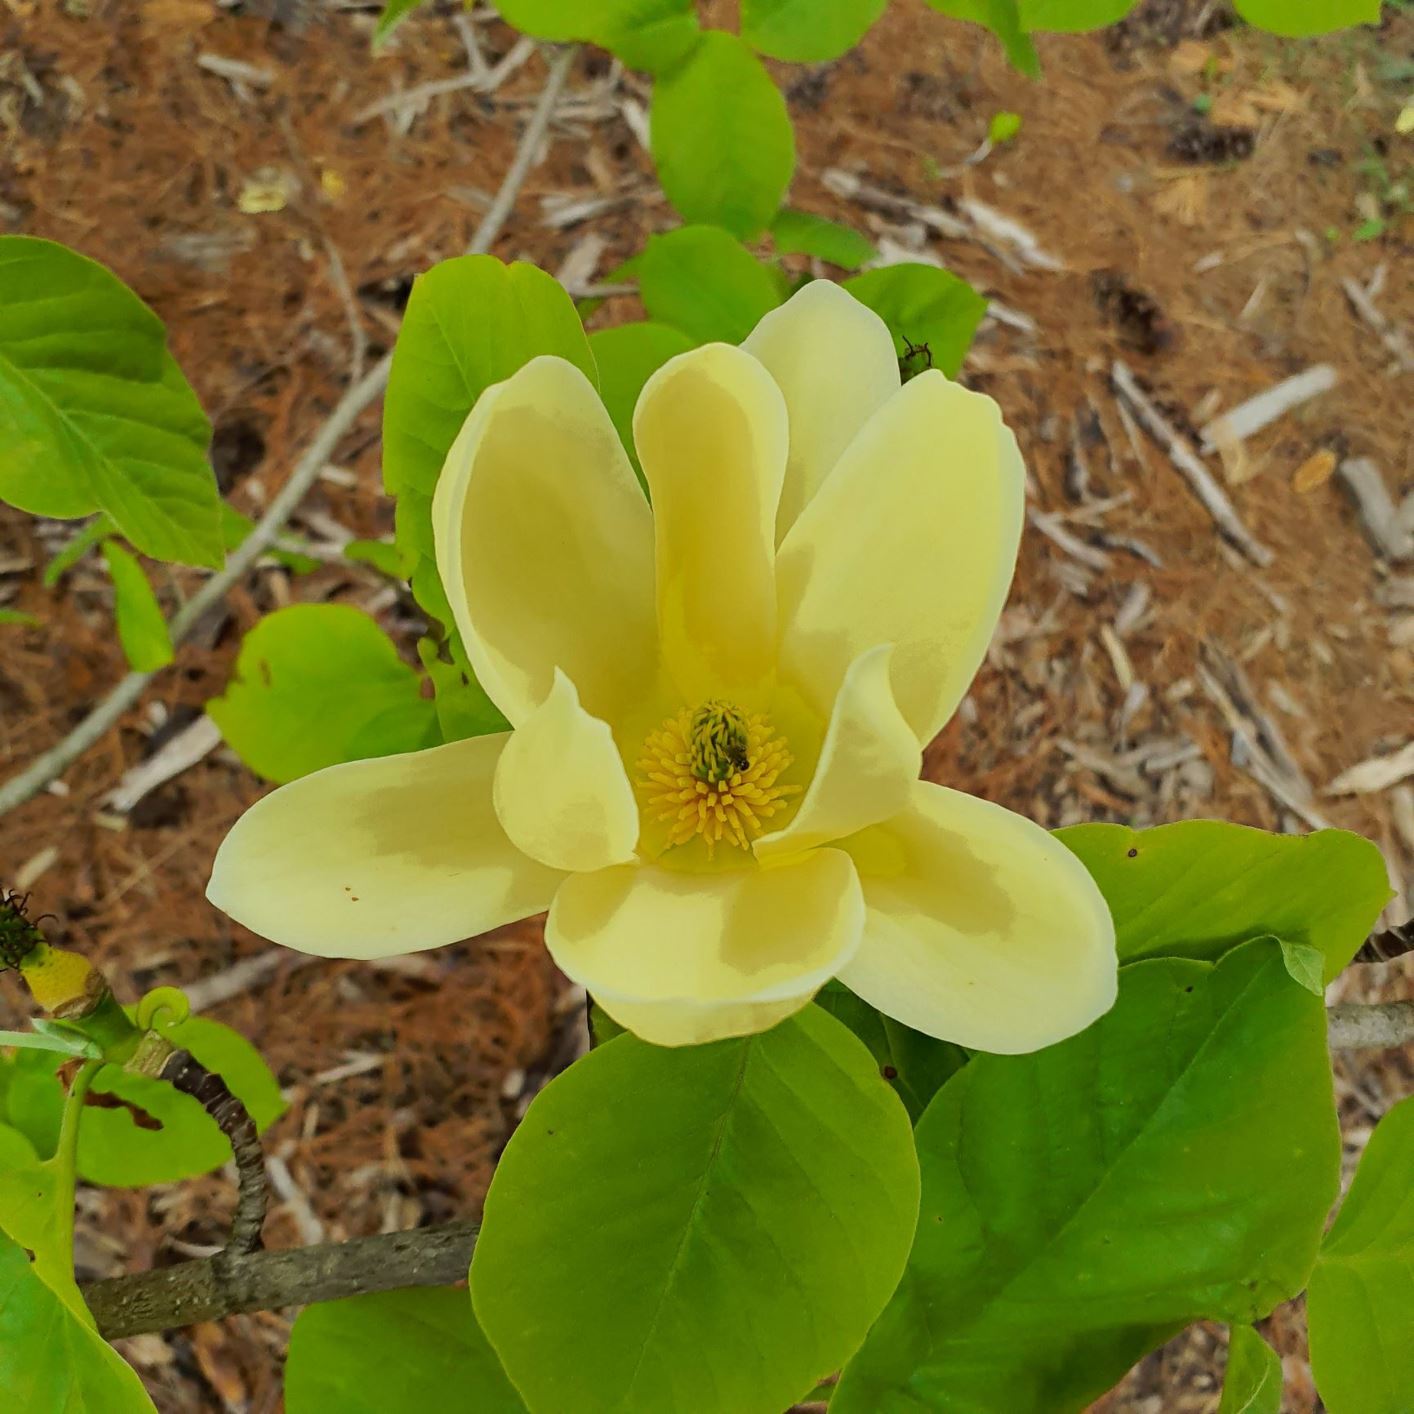 Magnolia 'Lois' - Lois magnolia